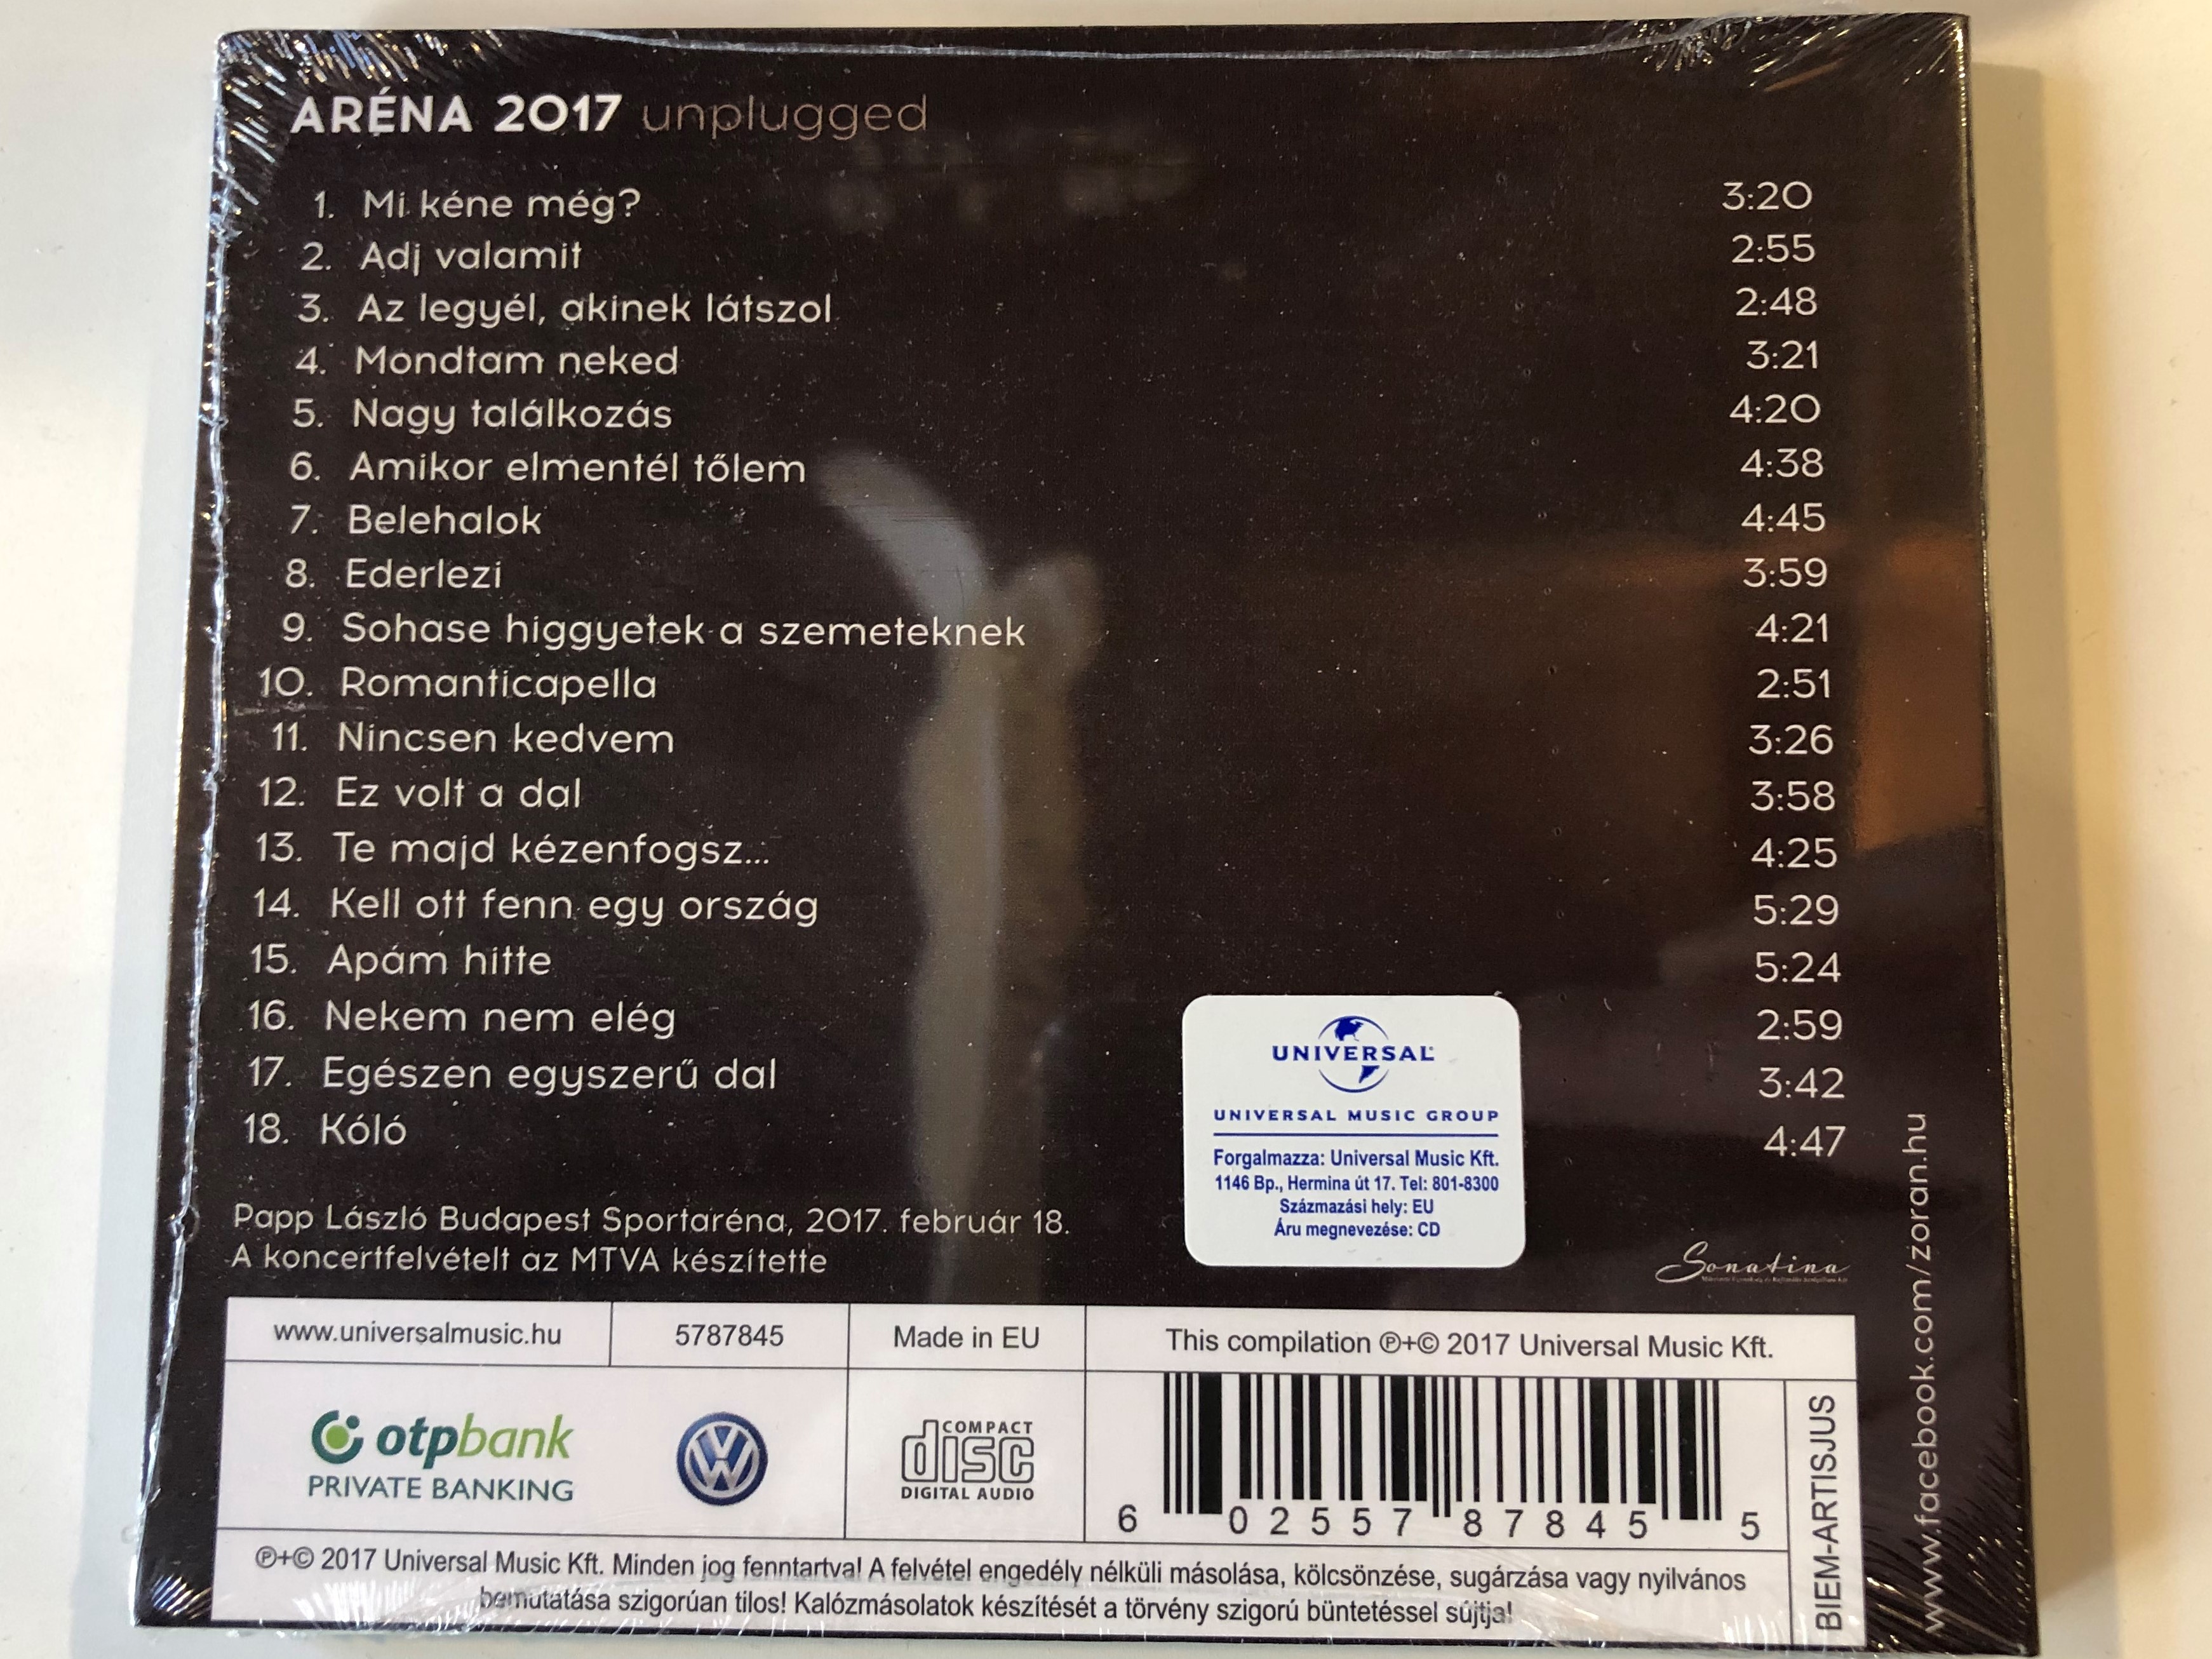 zor-n-ar-na-2017-unplugged-universal-audio-cd-2017-5787845-2-.jpg